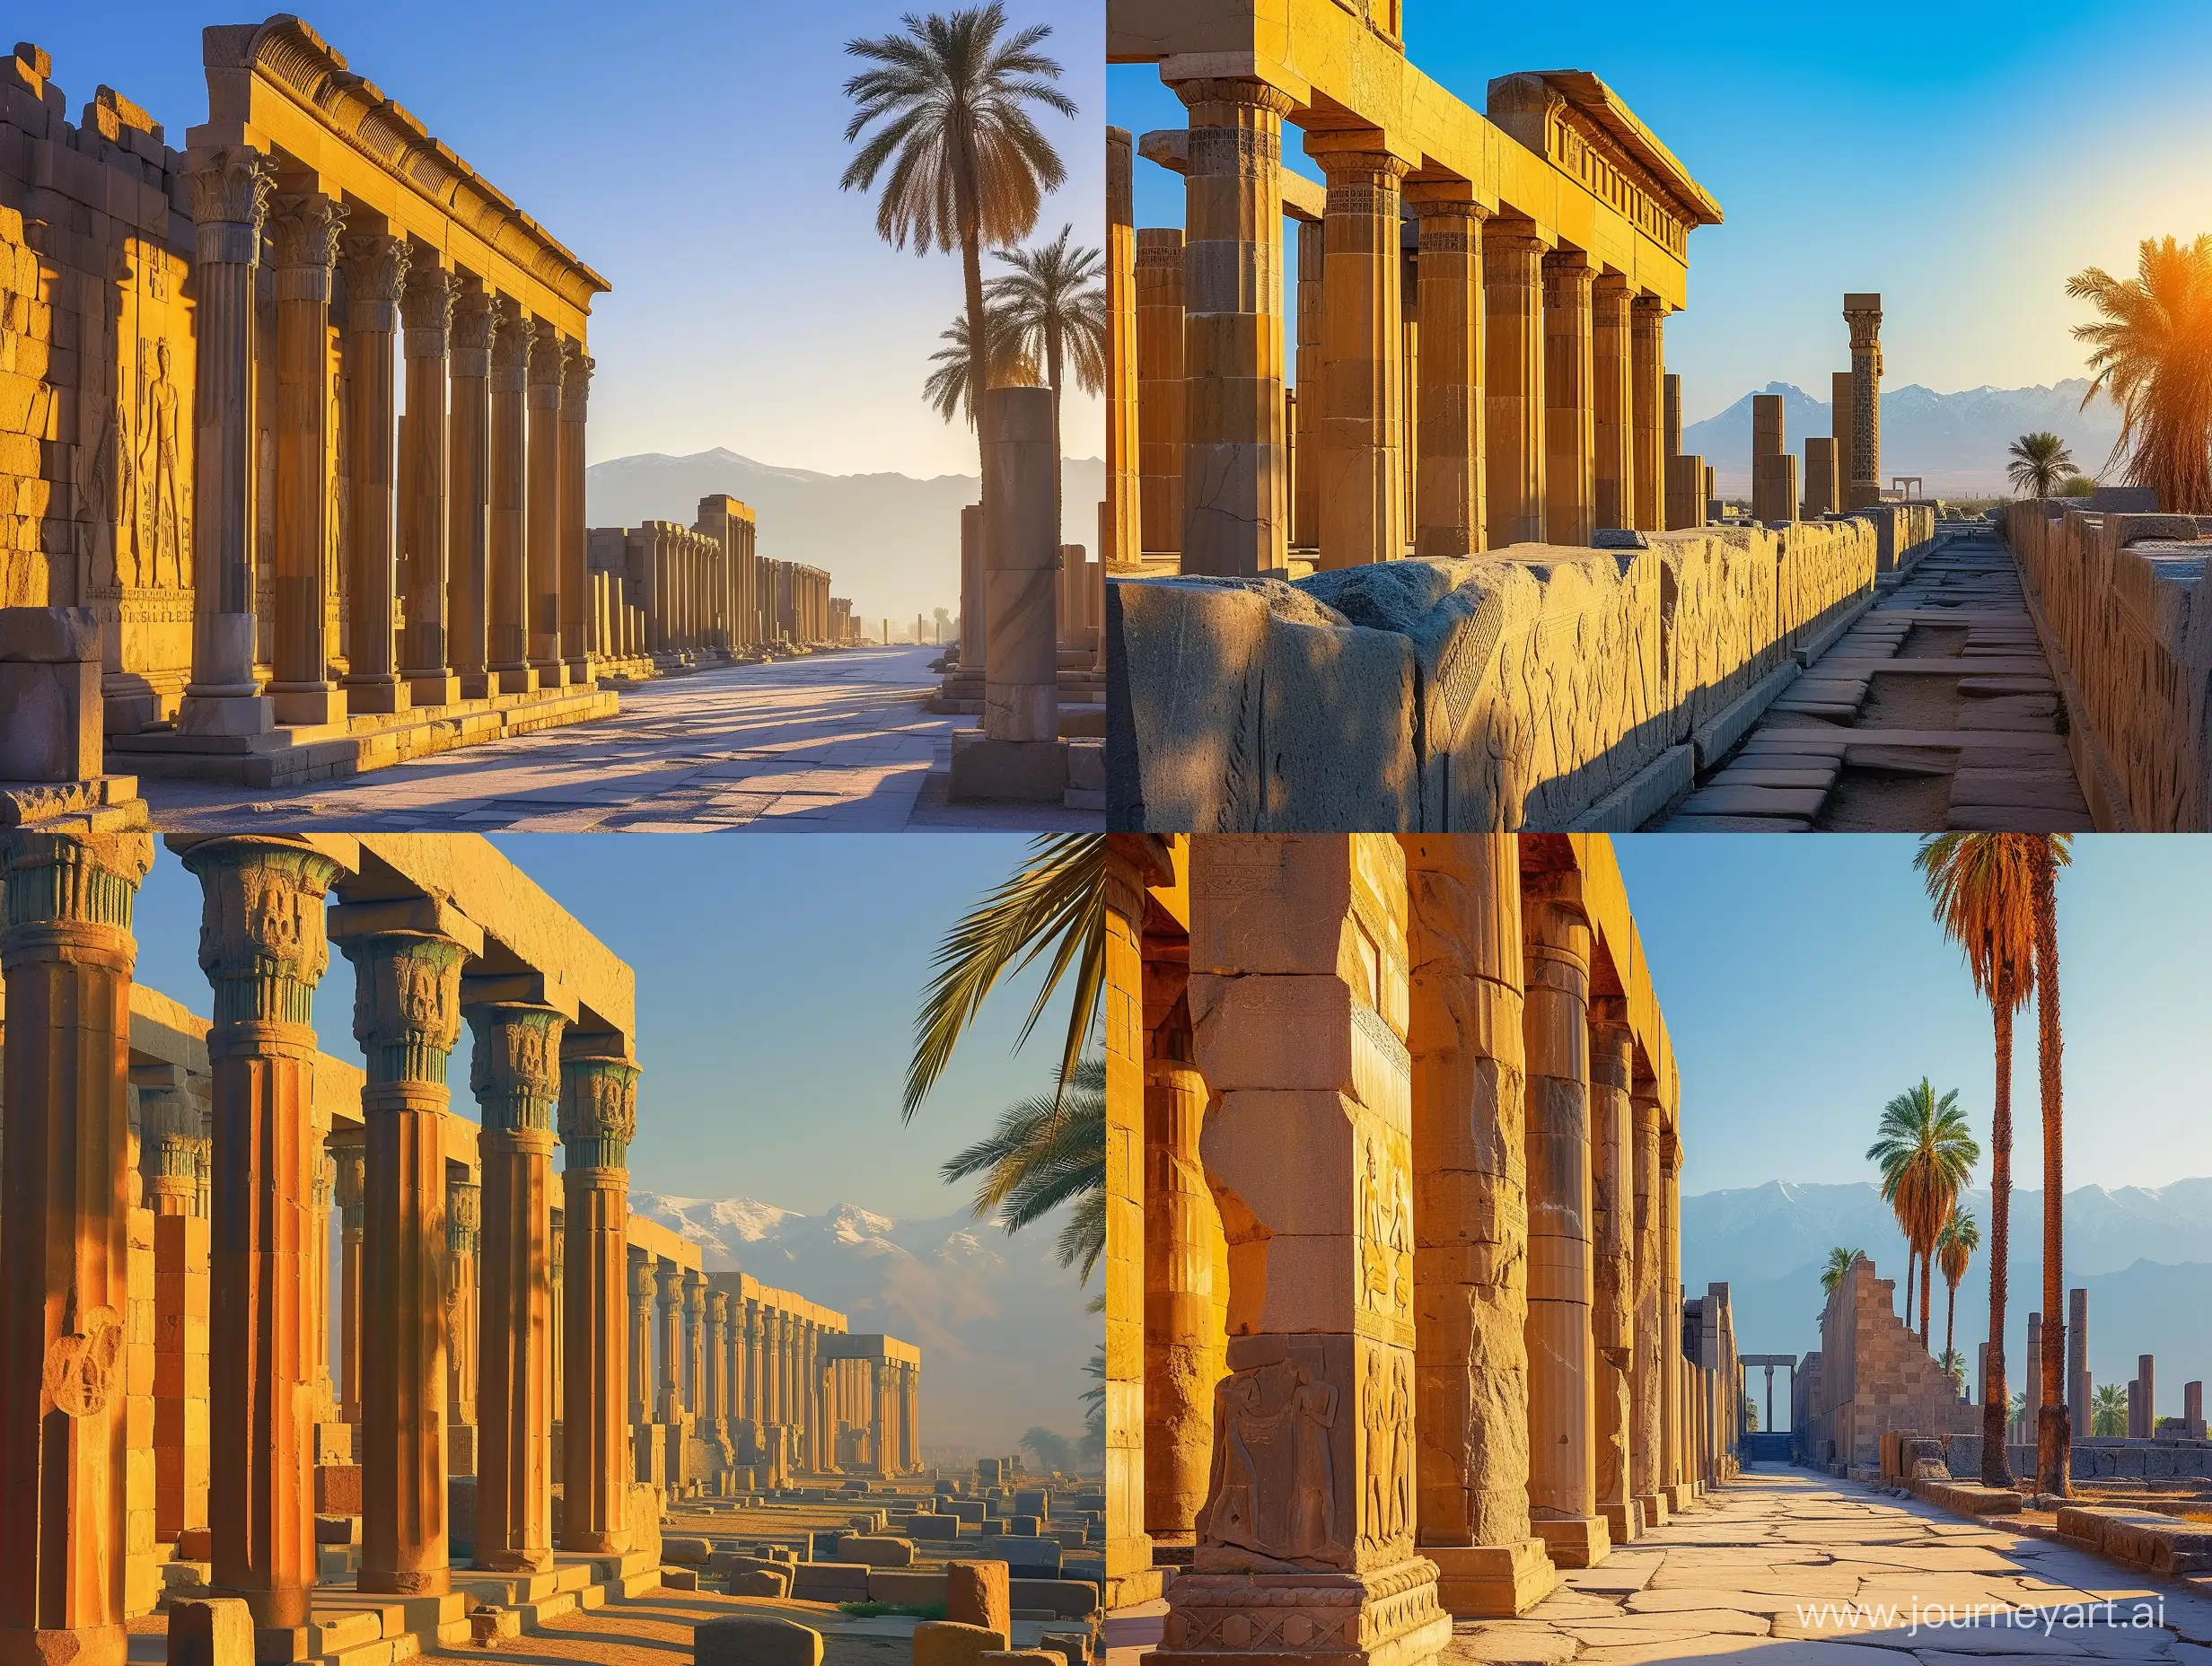 Golden-Sunrise-at-Persepolis-Achaemenid-Majesty-in-Morning-Light